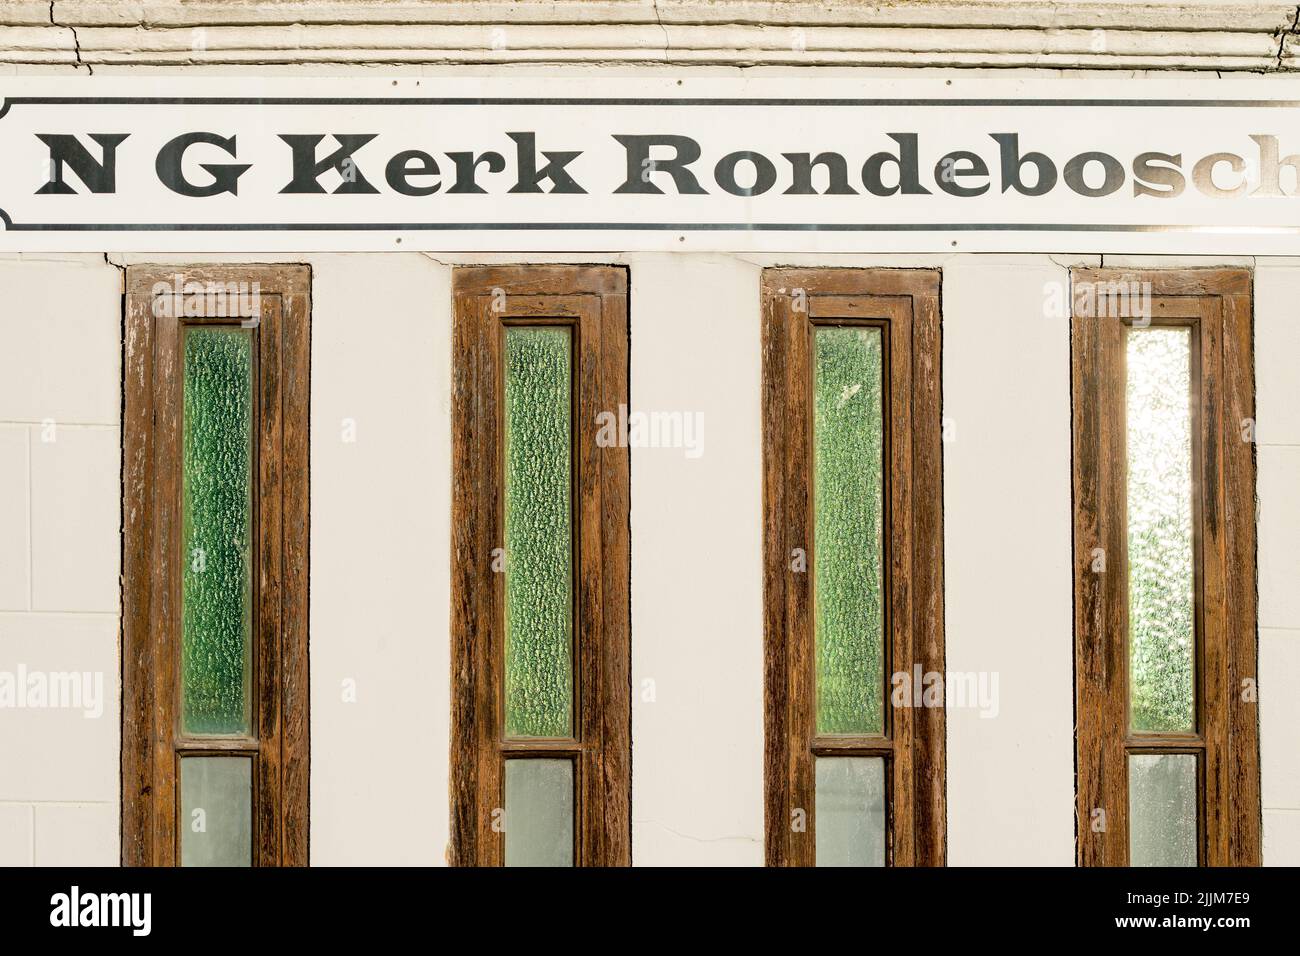 N G Kerk Rondebosch segno o segnaletica sopra le finestre della chiesa closeup a Città del Capo, Sud Africa concetto di religione, credo religioso, spiritualità Foto Stock